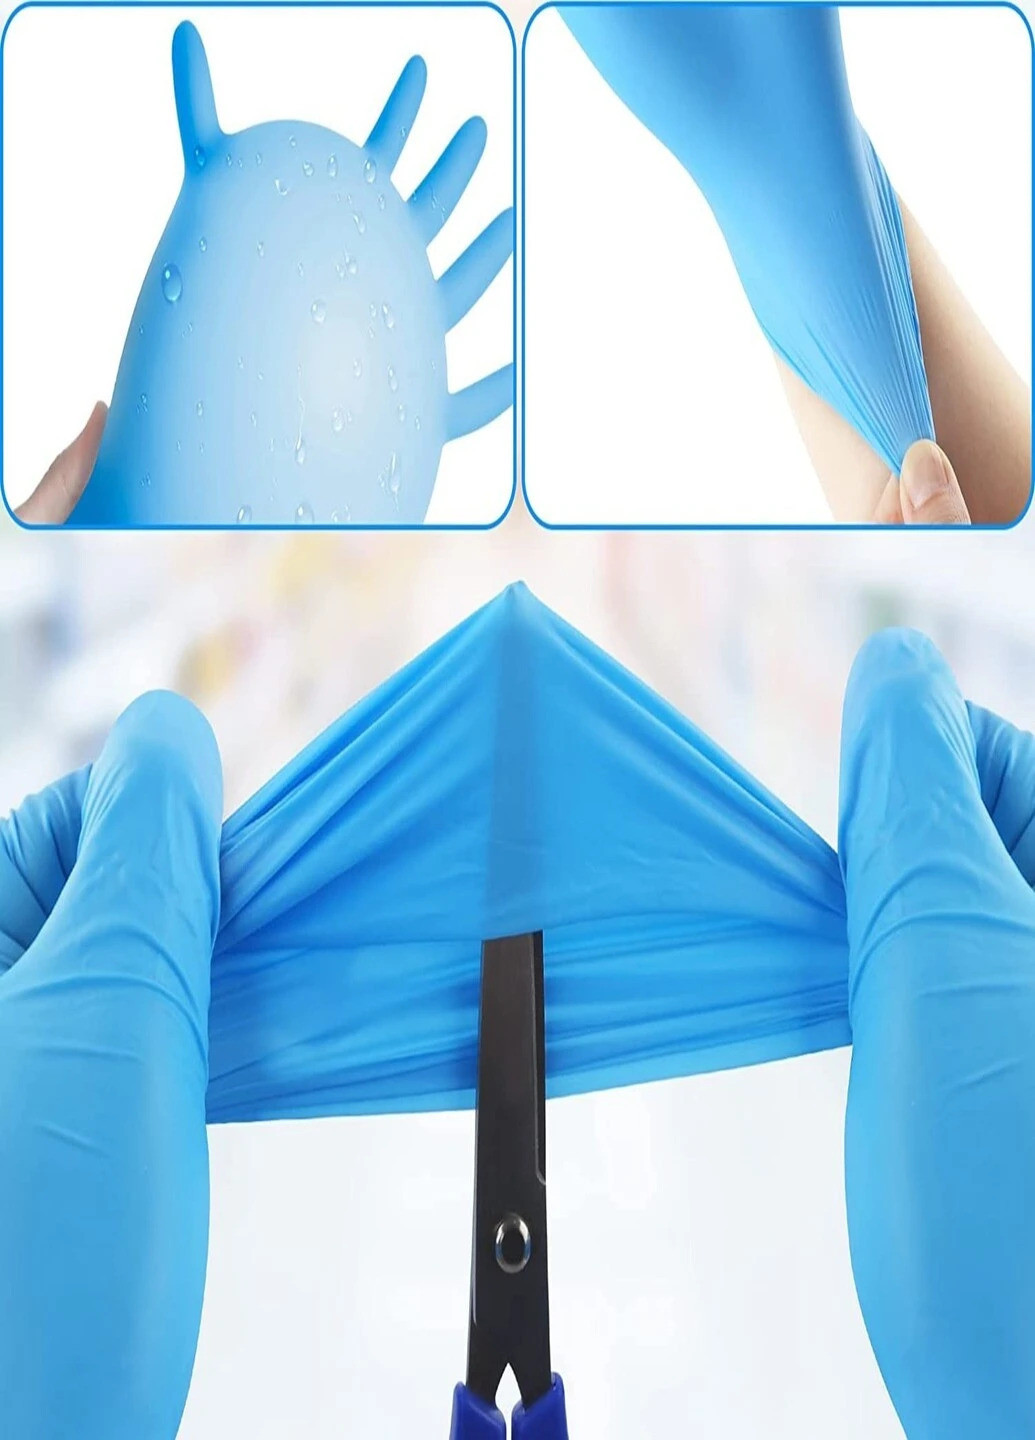 Перчатки нитриловые Vitals Blue смотровые текстурированные без пудры голубые размер XS 100 шт (3 г.) голубые Medicom (259569983)